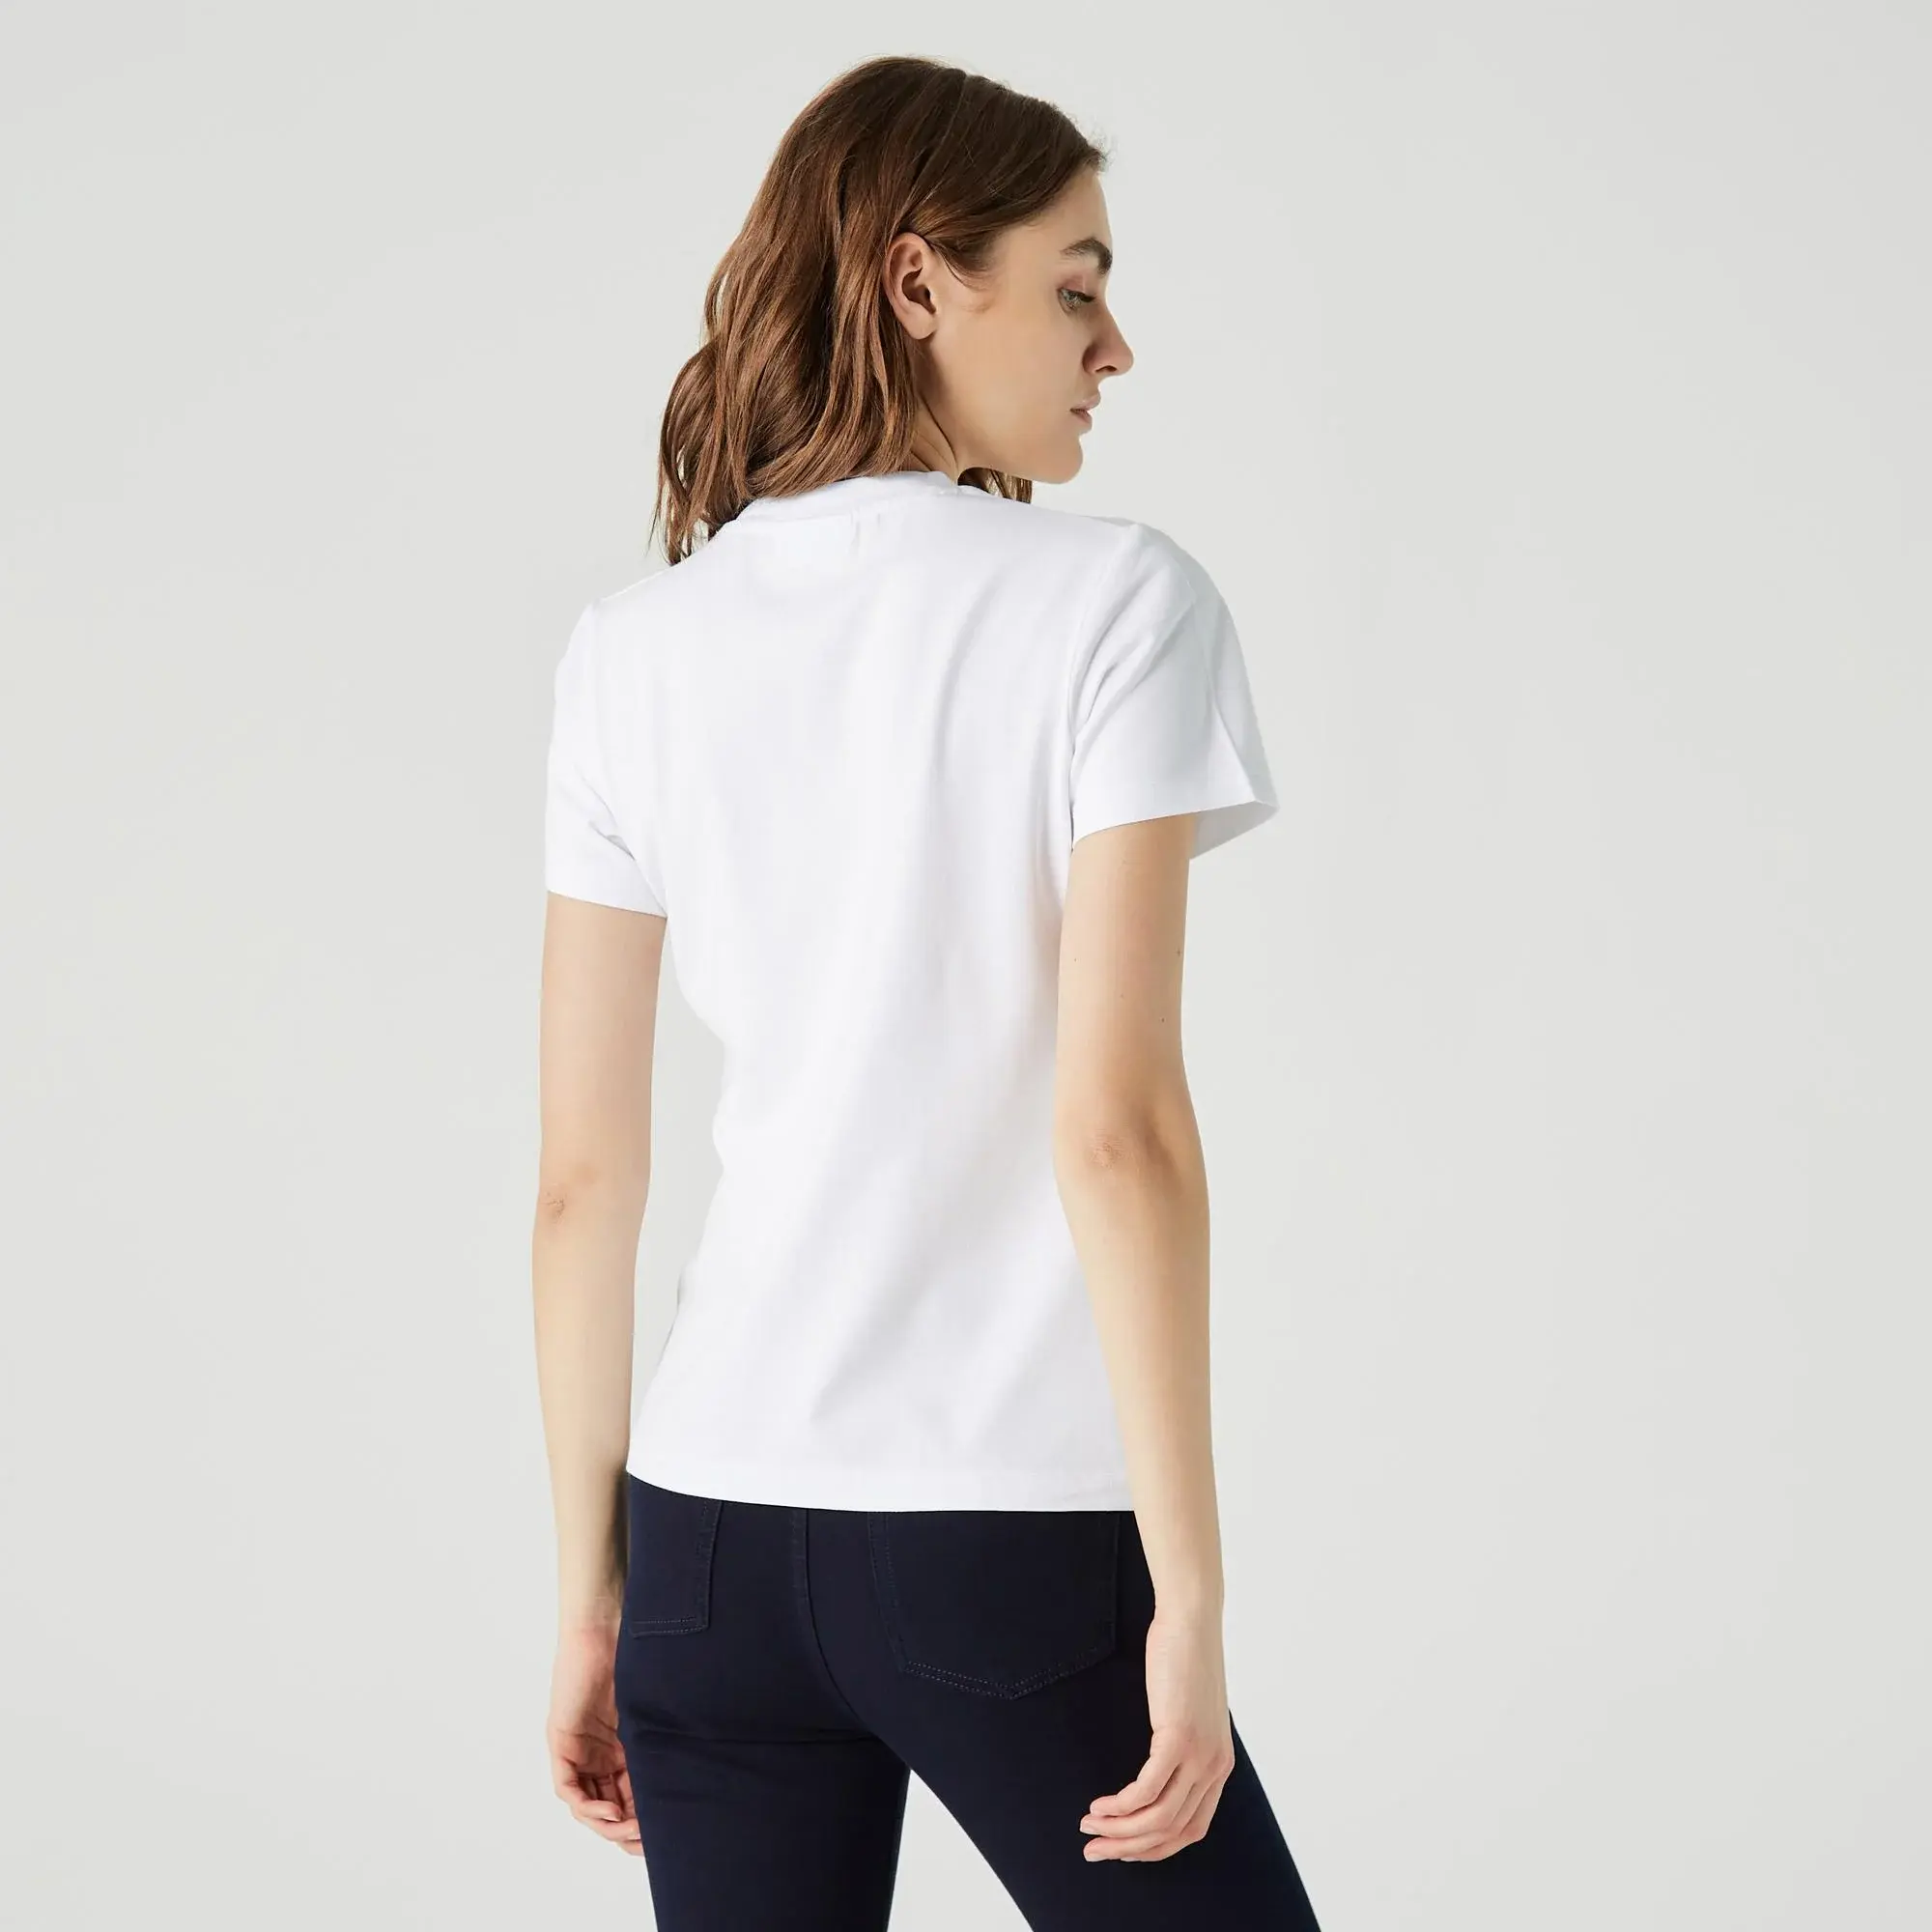 Lacoste Kadın Slim Fit Bisiklet Yaka Baskılı Beyaz T-Shirt. 2